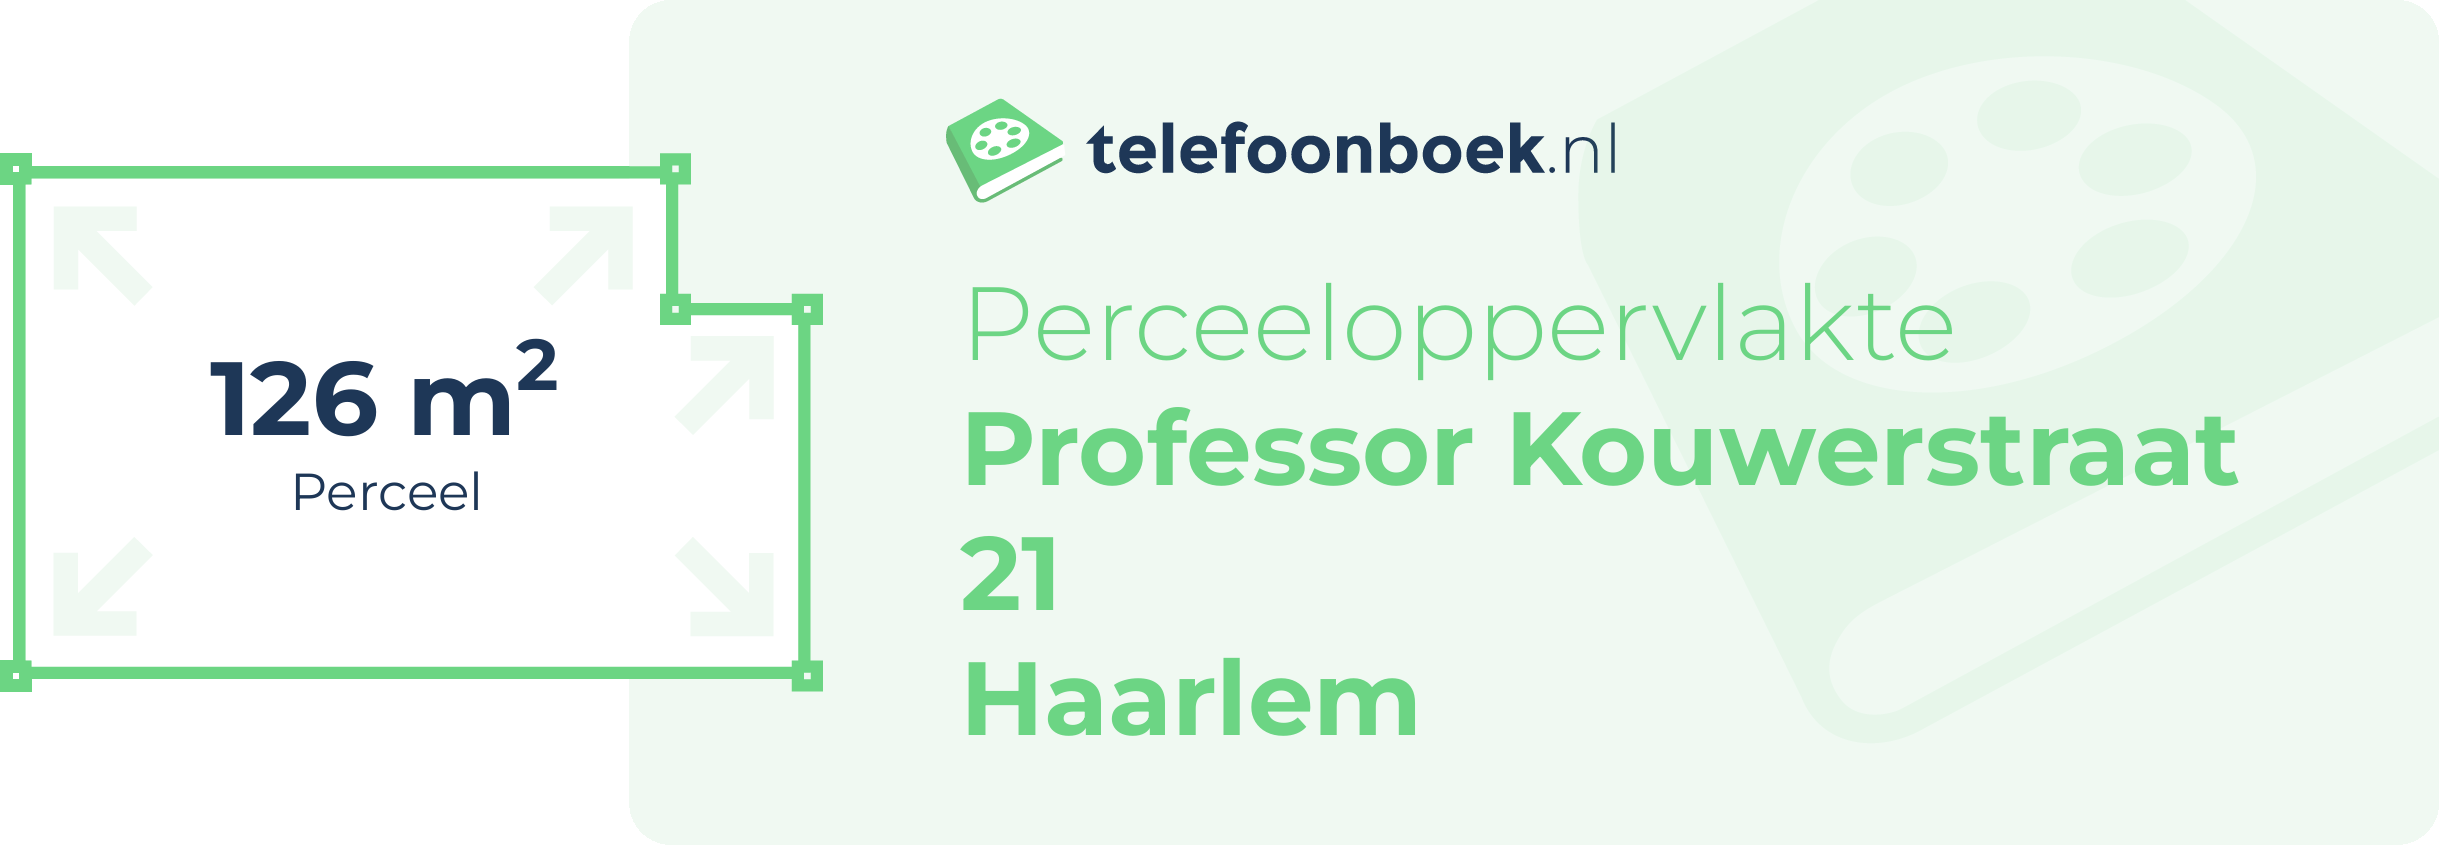 Perceeloppervlakte Professor Kouwerstraat 21 Haarlem